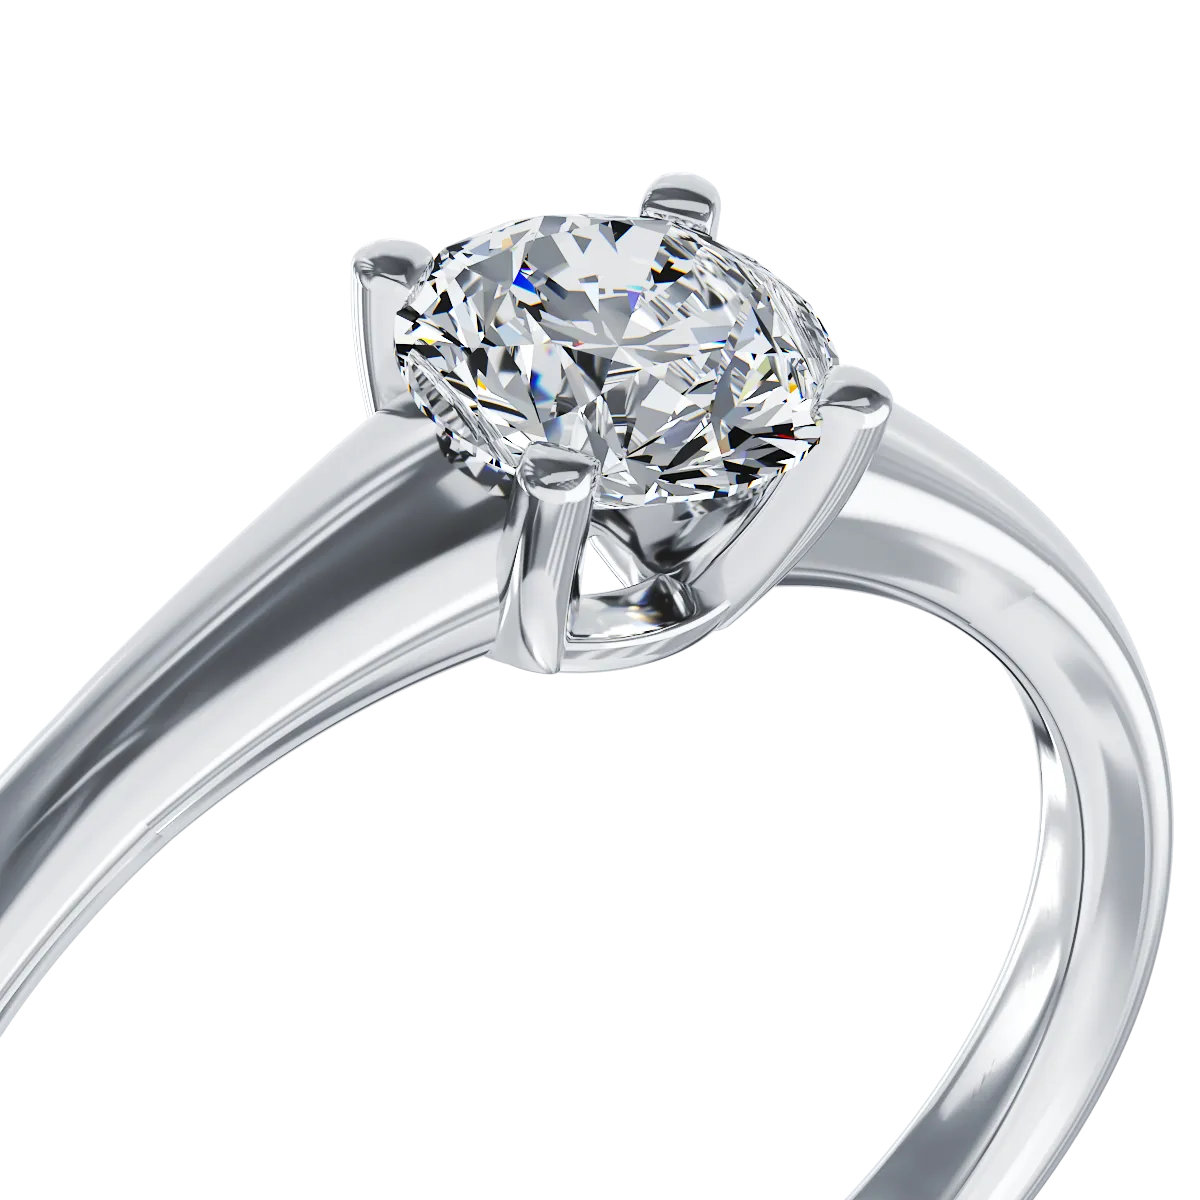 Годежен пръстен от бяло злато 18K с диамант пасианс 0.5кт